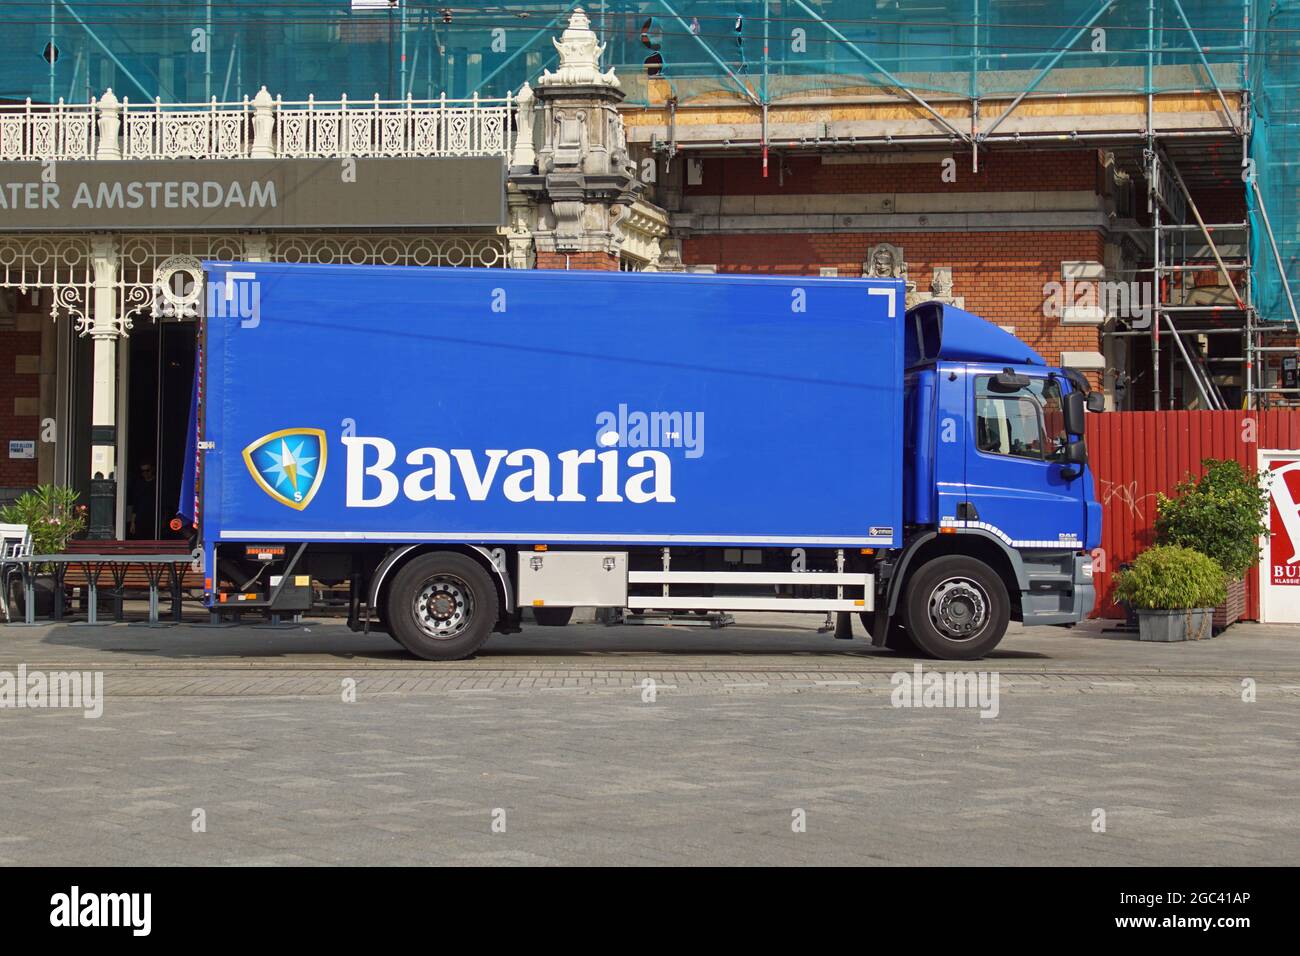 Amsterdam, pays-Bas - 5 août 2021 : camion de livraison de bière Bavaria stationné sur le côté de la route. Personne dans le véhicule. Banque D'Images